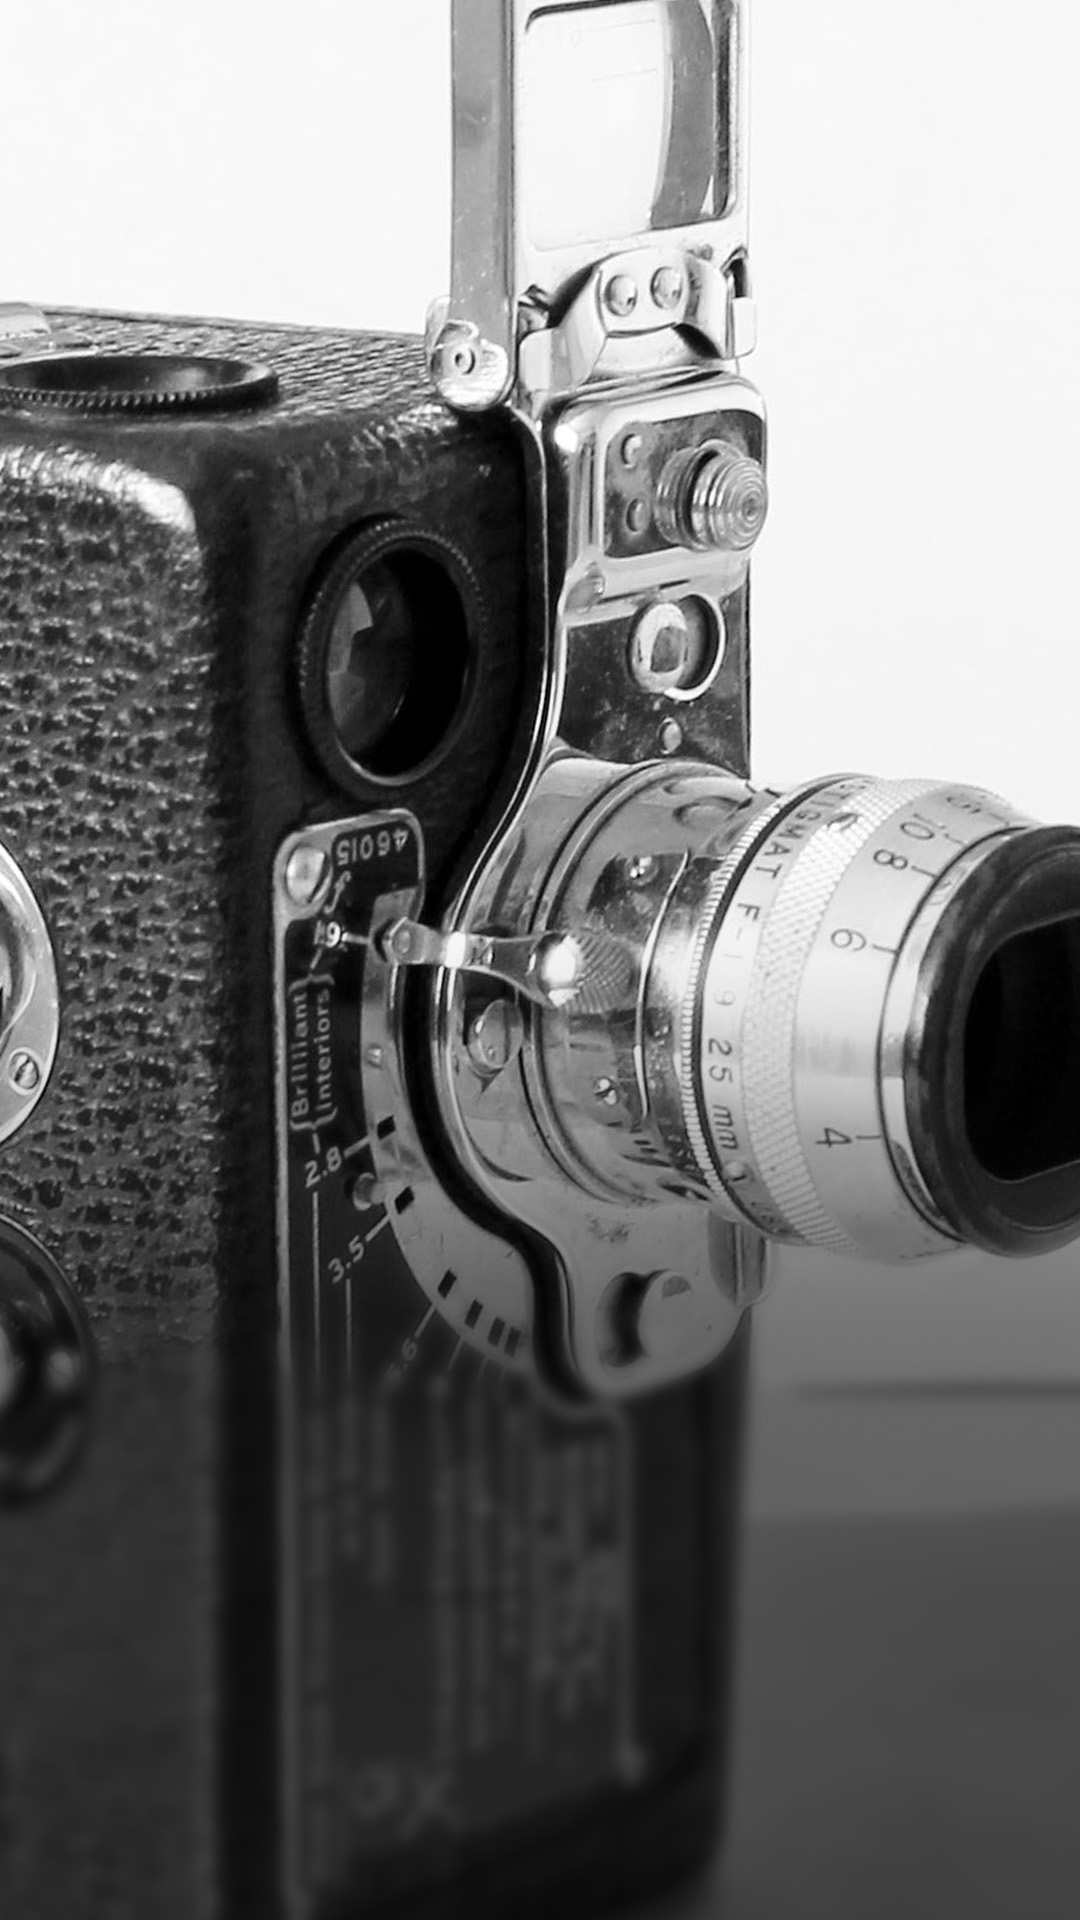 16mm camera